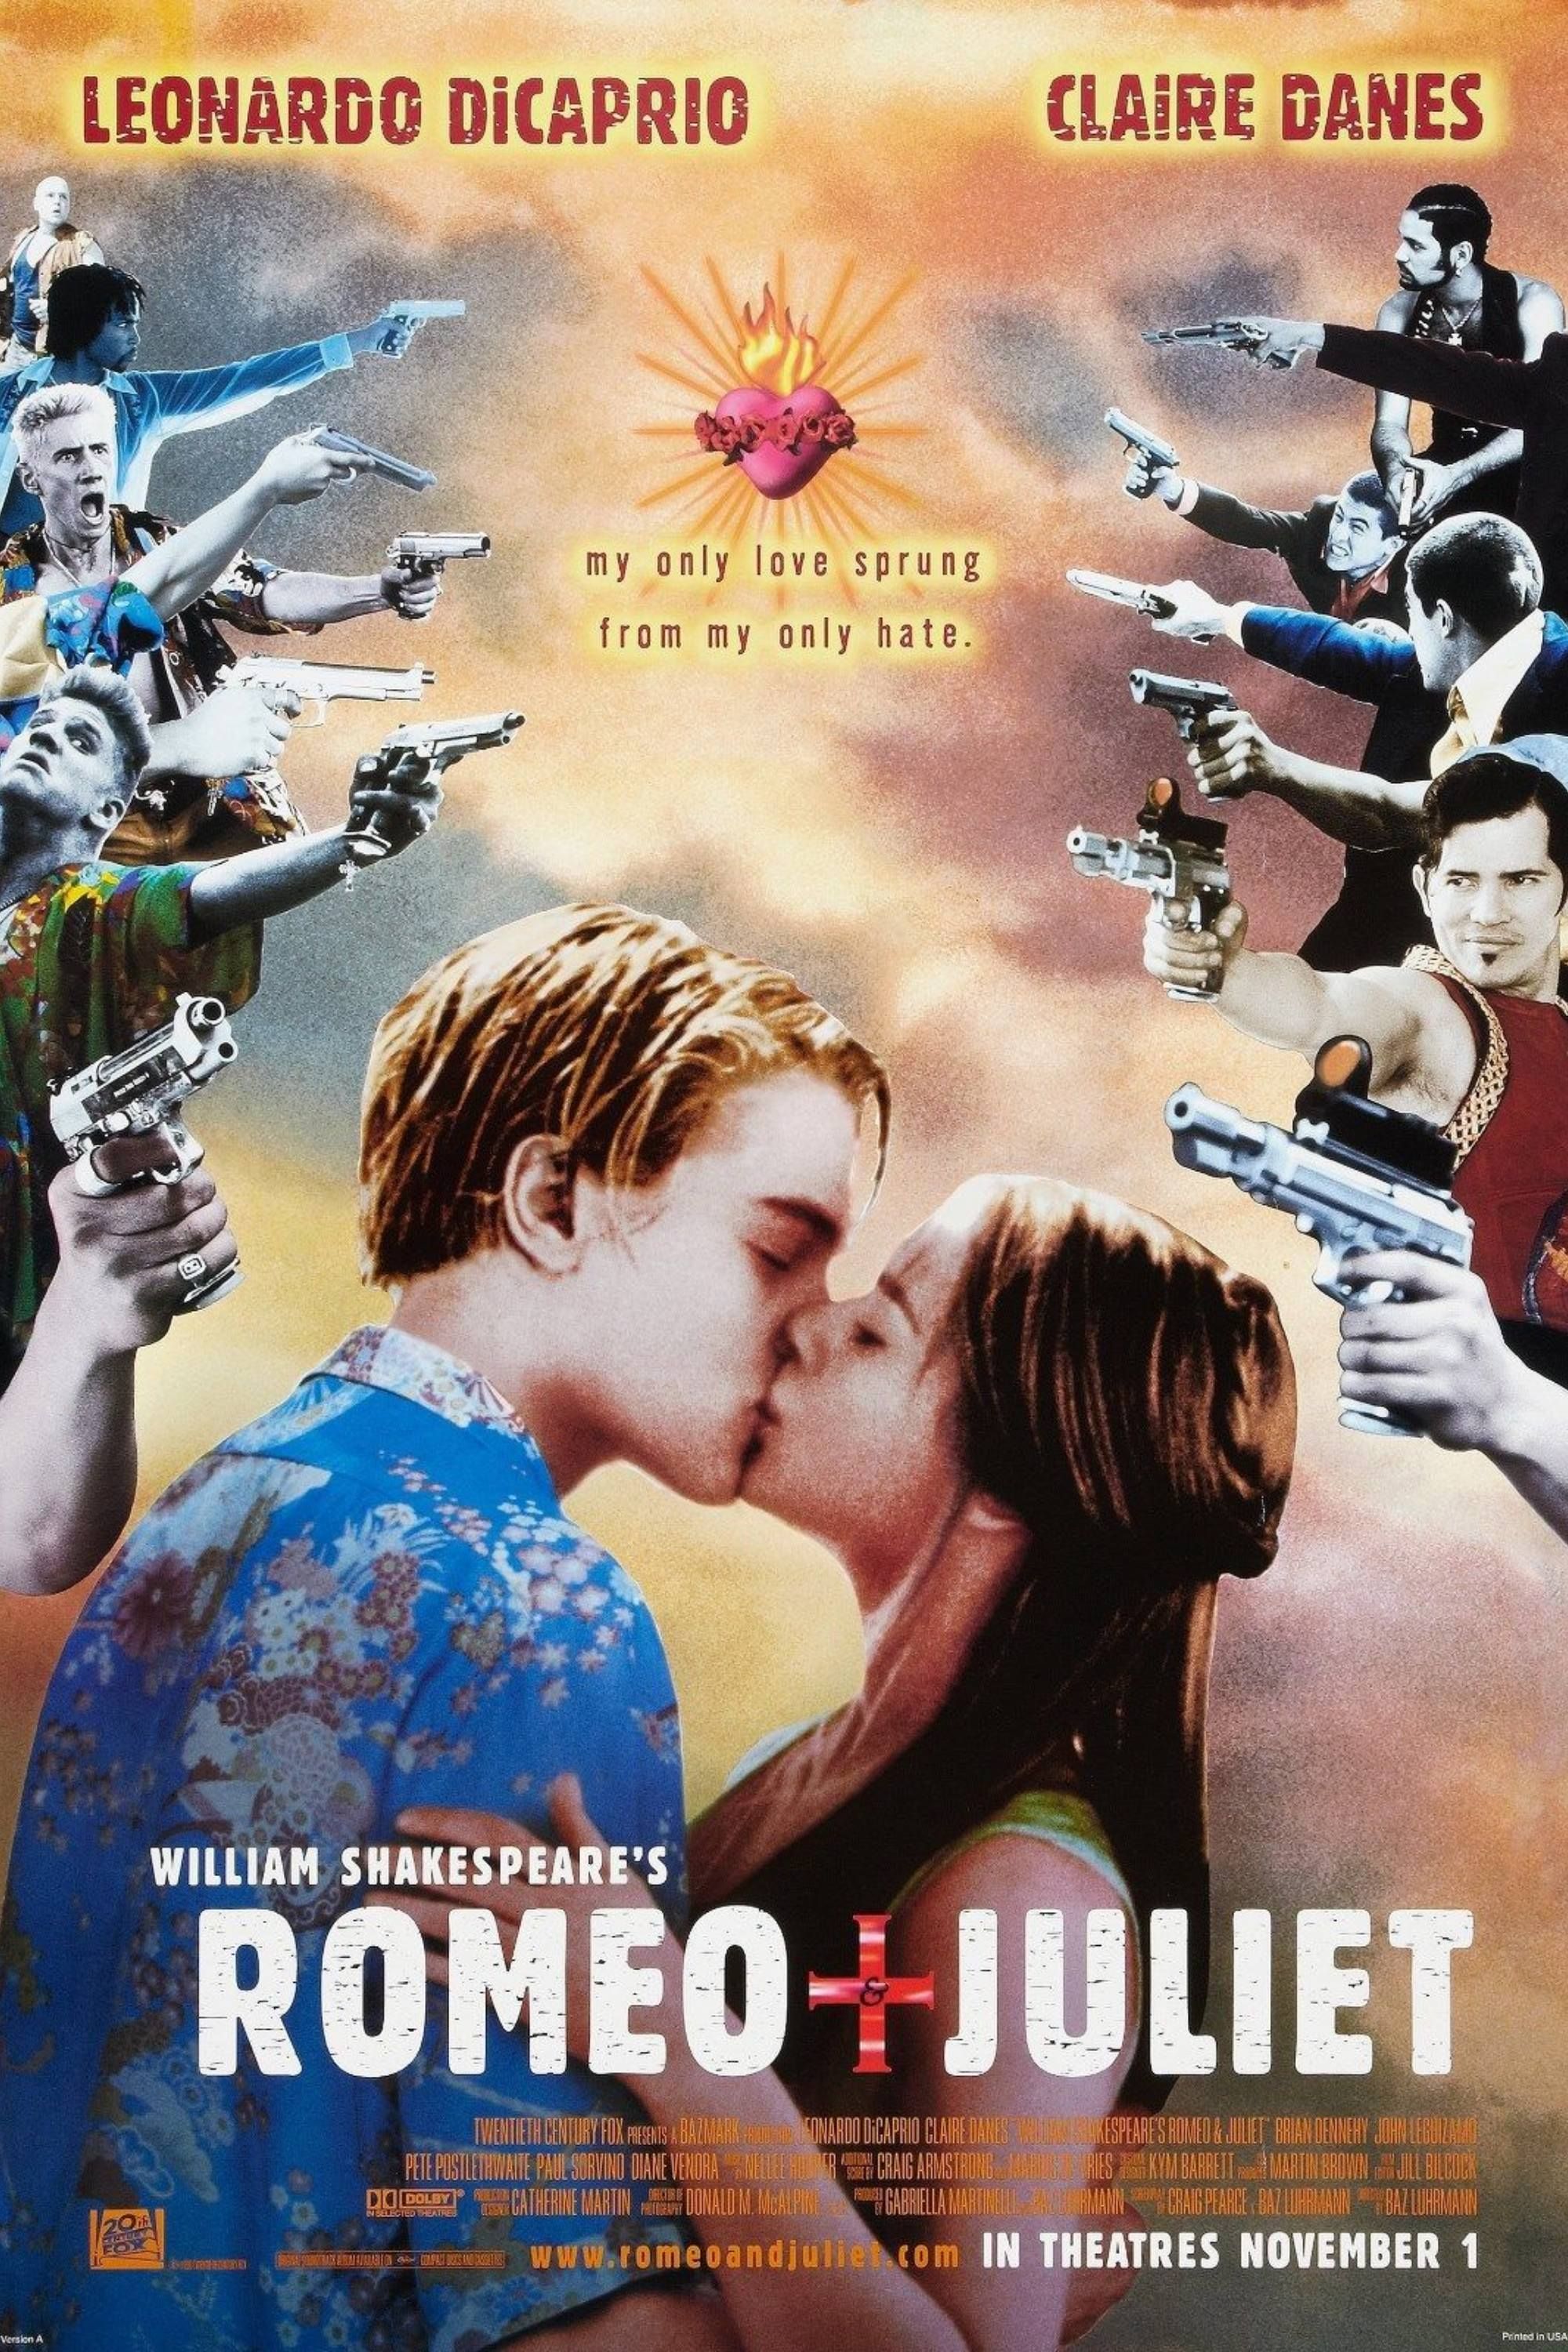 Romeu + Julieta - Pôster - DiCaprio e Claire Danes se beijando